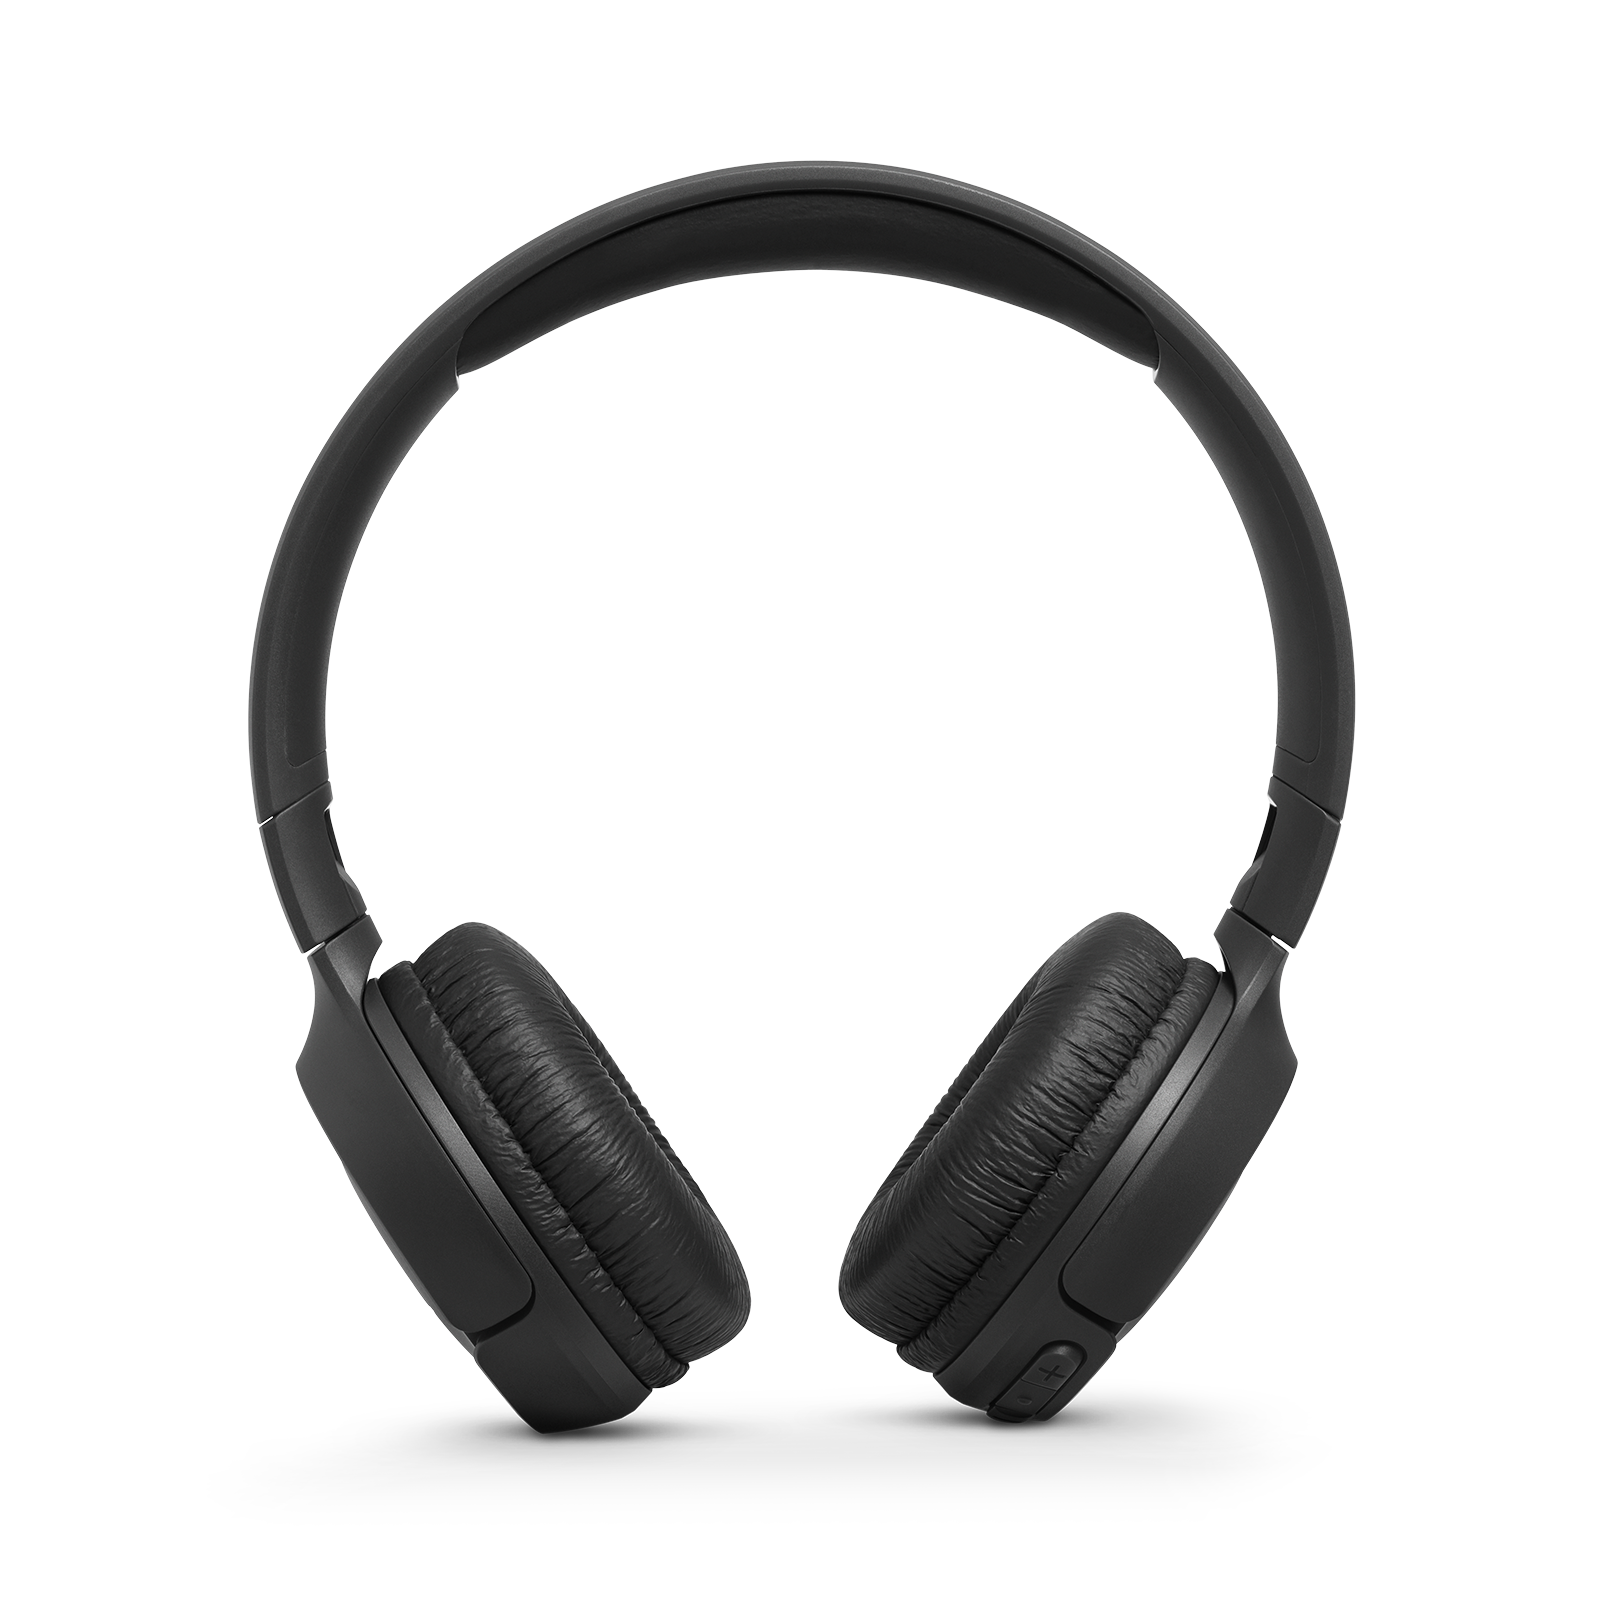 JBL Tune 500BT - Black - Wireless on-ear headphones - Front